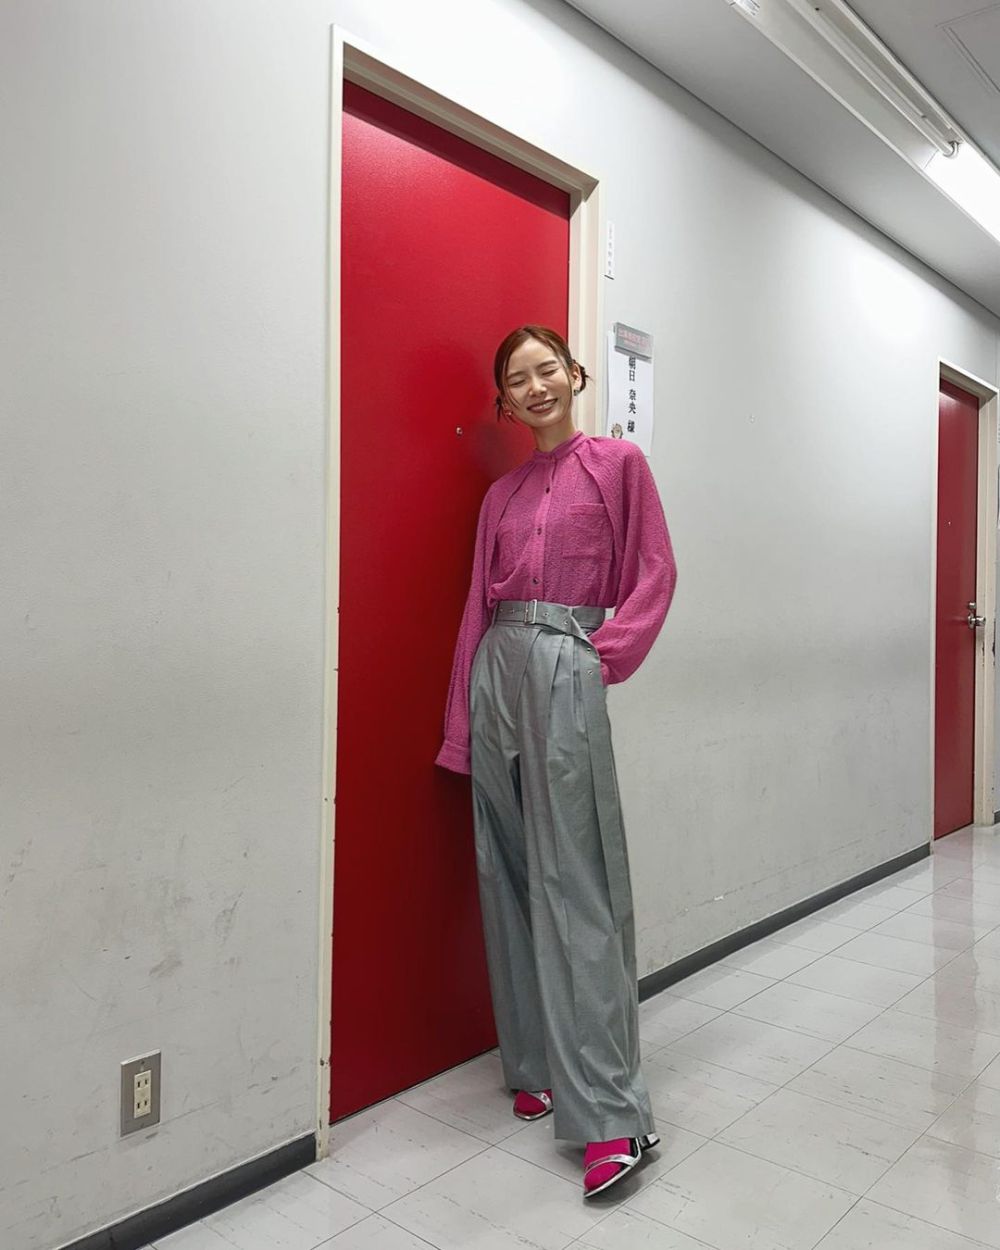 12 Ide Outfit Formal untuk Ngantor ala Nao Asahi, Fashionable!